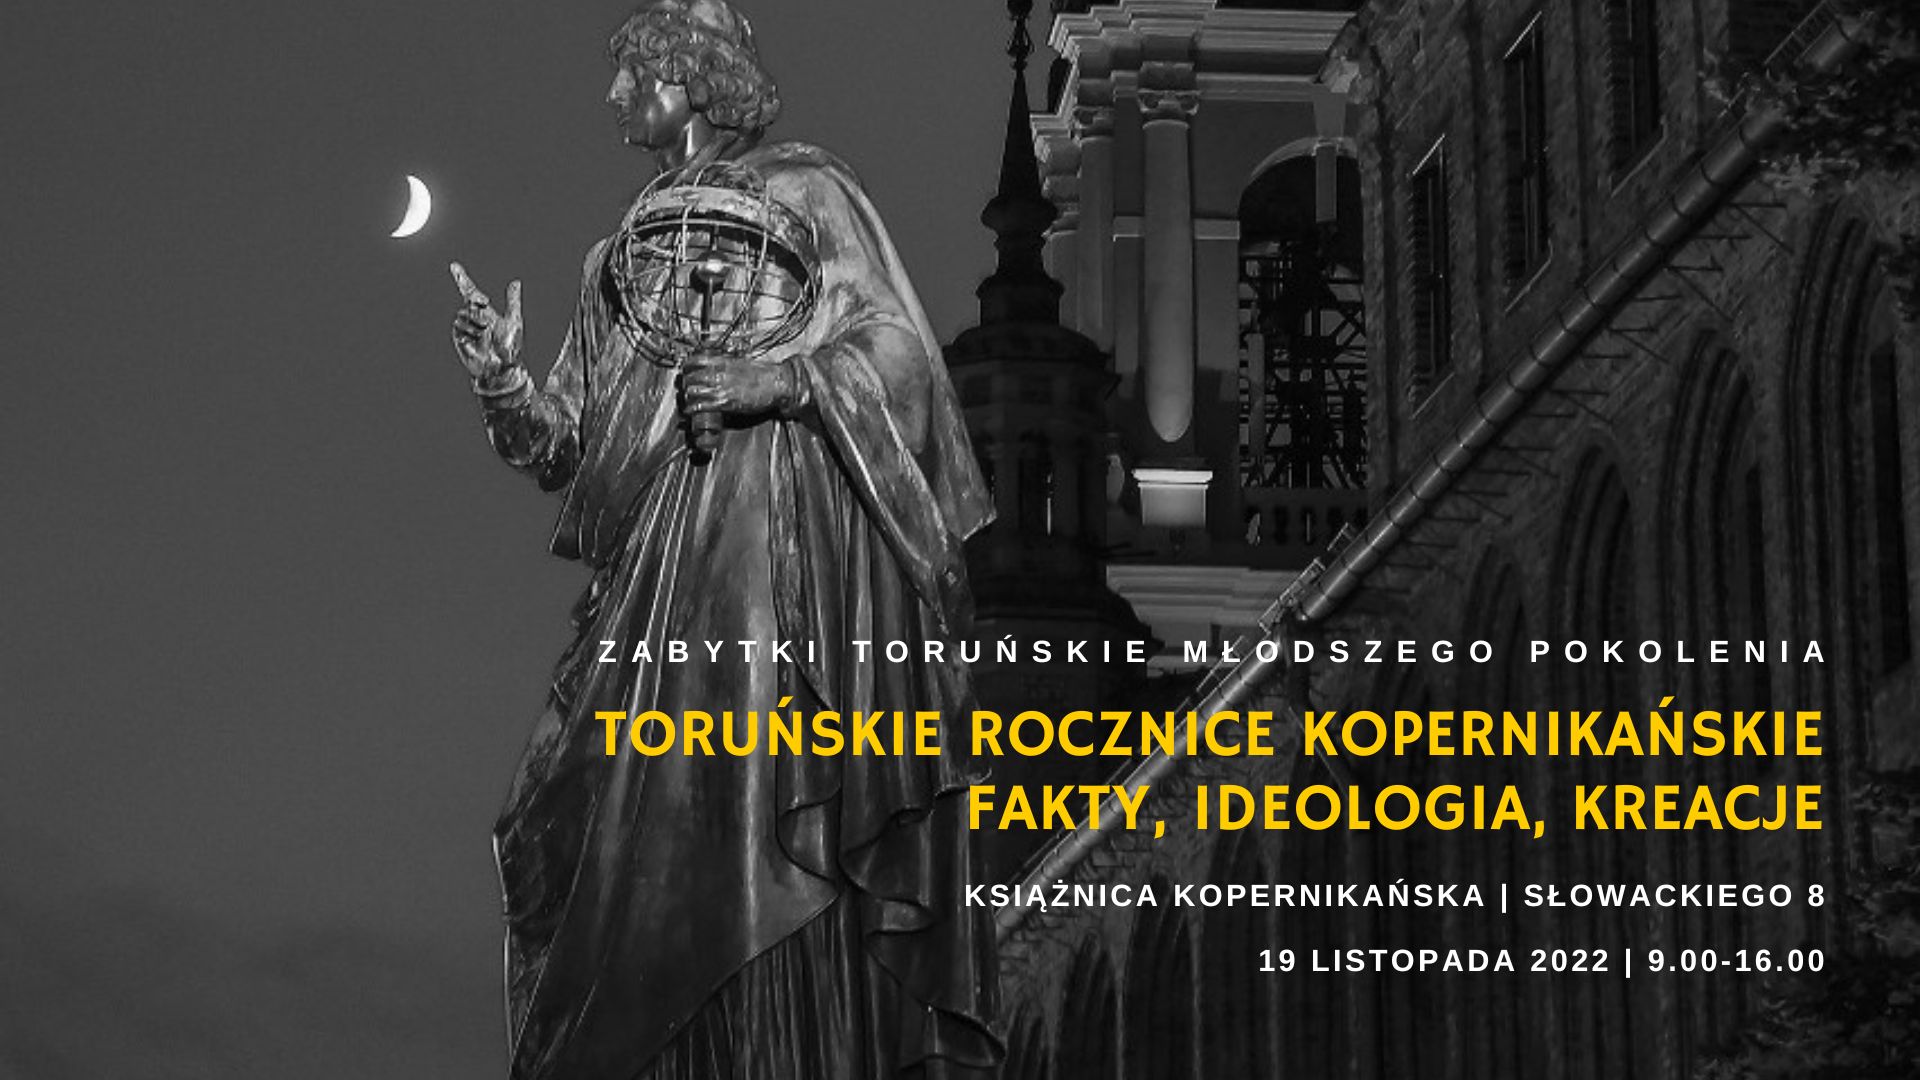 15. konferencję z cyklu Zabytki toruńskie młodszego pokolenia: Toruńskie rocznice kopernikańskie: fakty, ideologia, kreacje